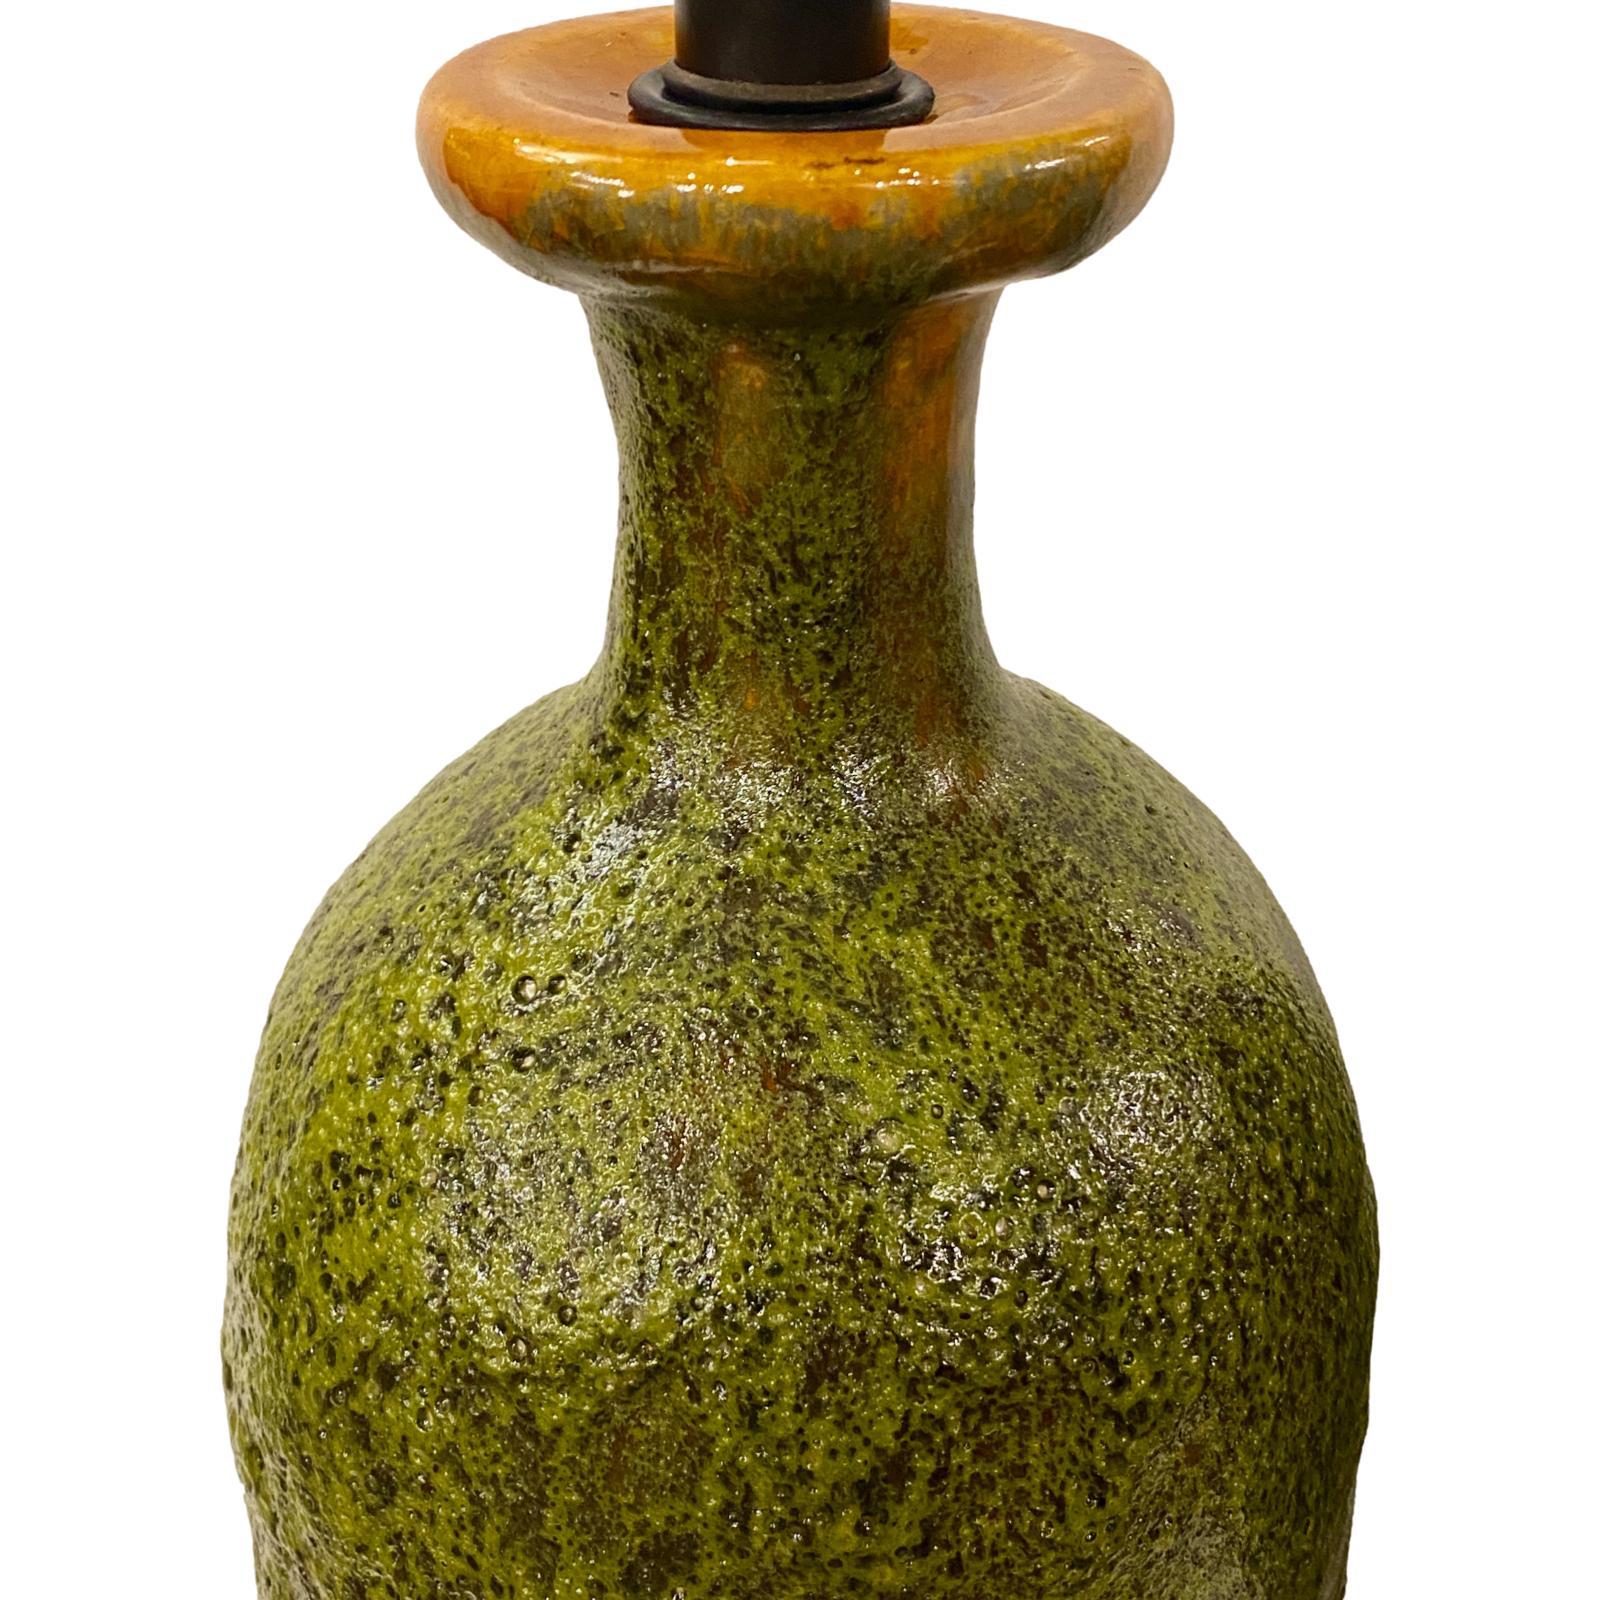 Paire de lampes italiennes en céramique émaillée de texture verte, datant des années 1950, avec des bases en bois.

Mesures :
Hauteur du corps : 22
Hauteur jusqu'à l'appui de l'abat-jour : 33
Diamètre : 7.